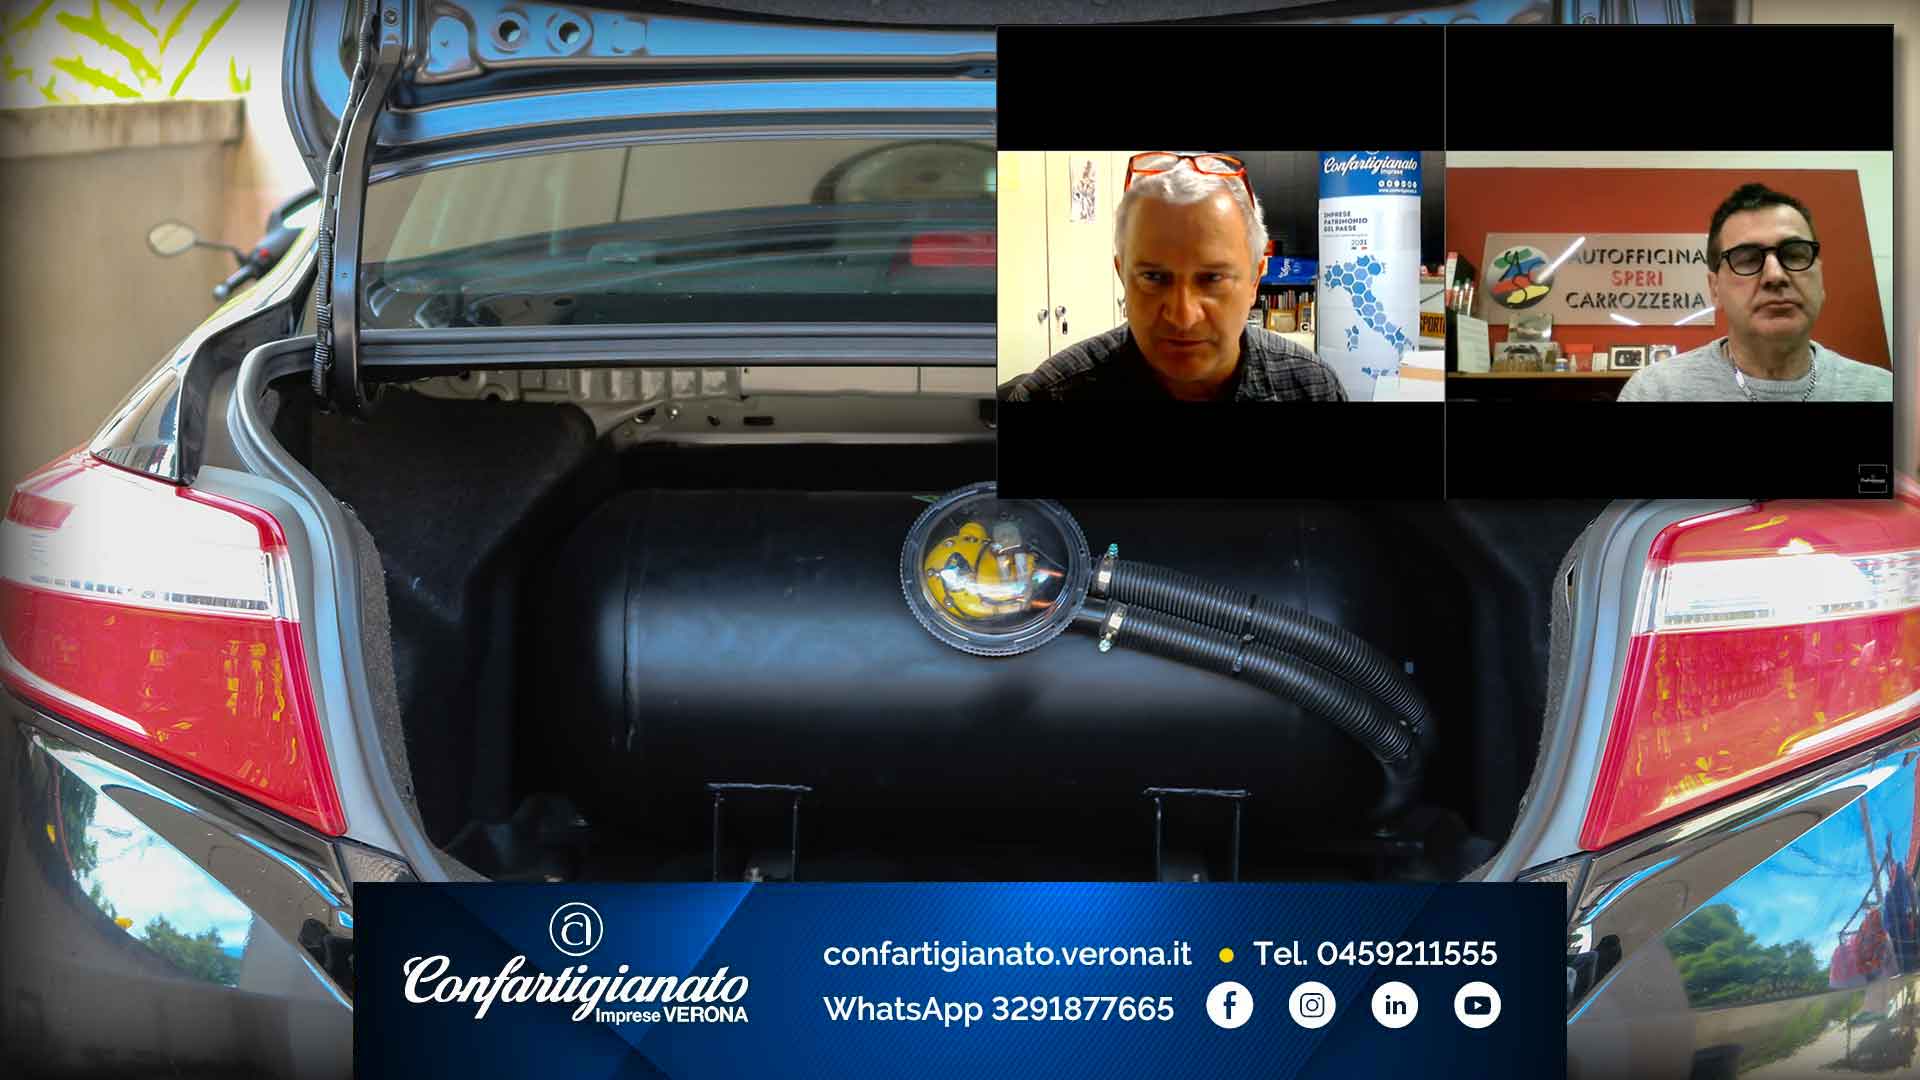 AUTORIPARATORI – Il video integrale del webinar di successo "Collaudo e certificazione in officina per alcune modifiche ai veicoli"